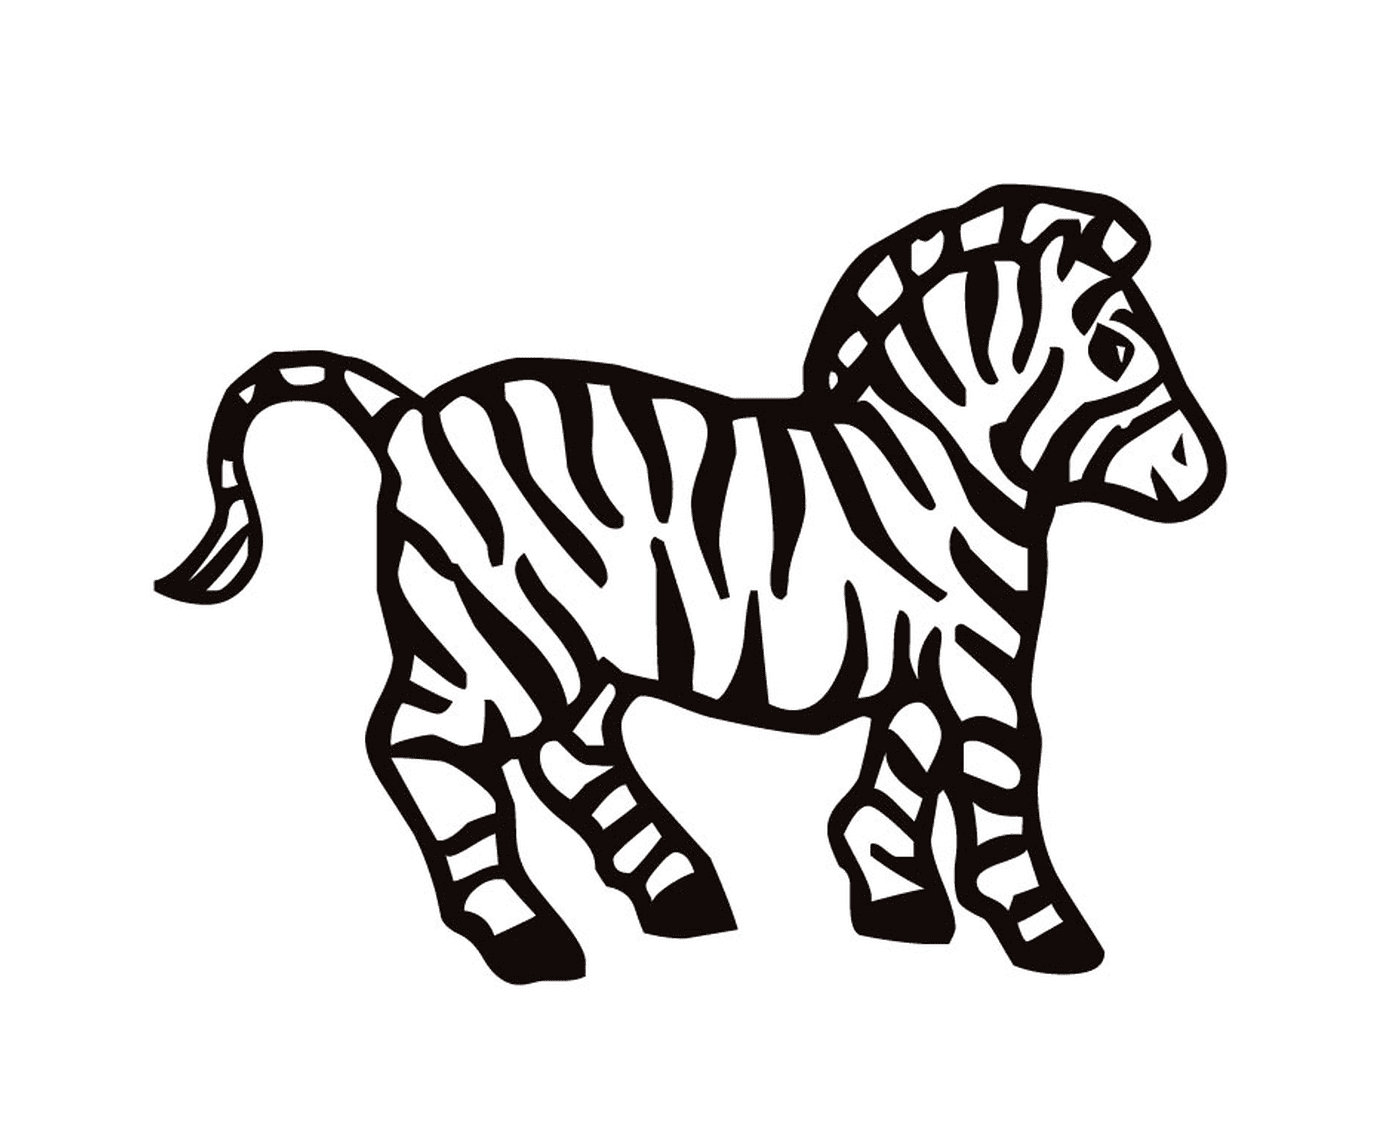  Bella zebra a righe 